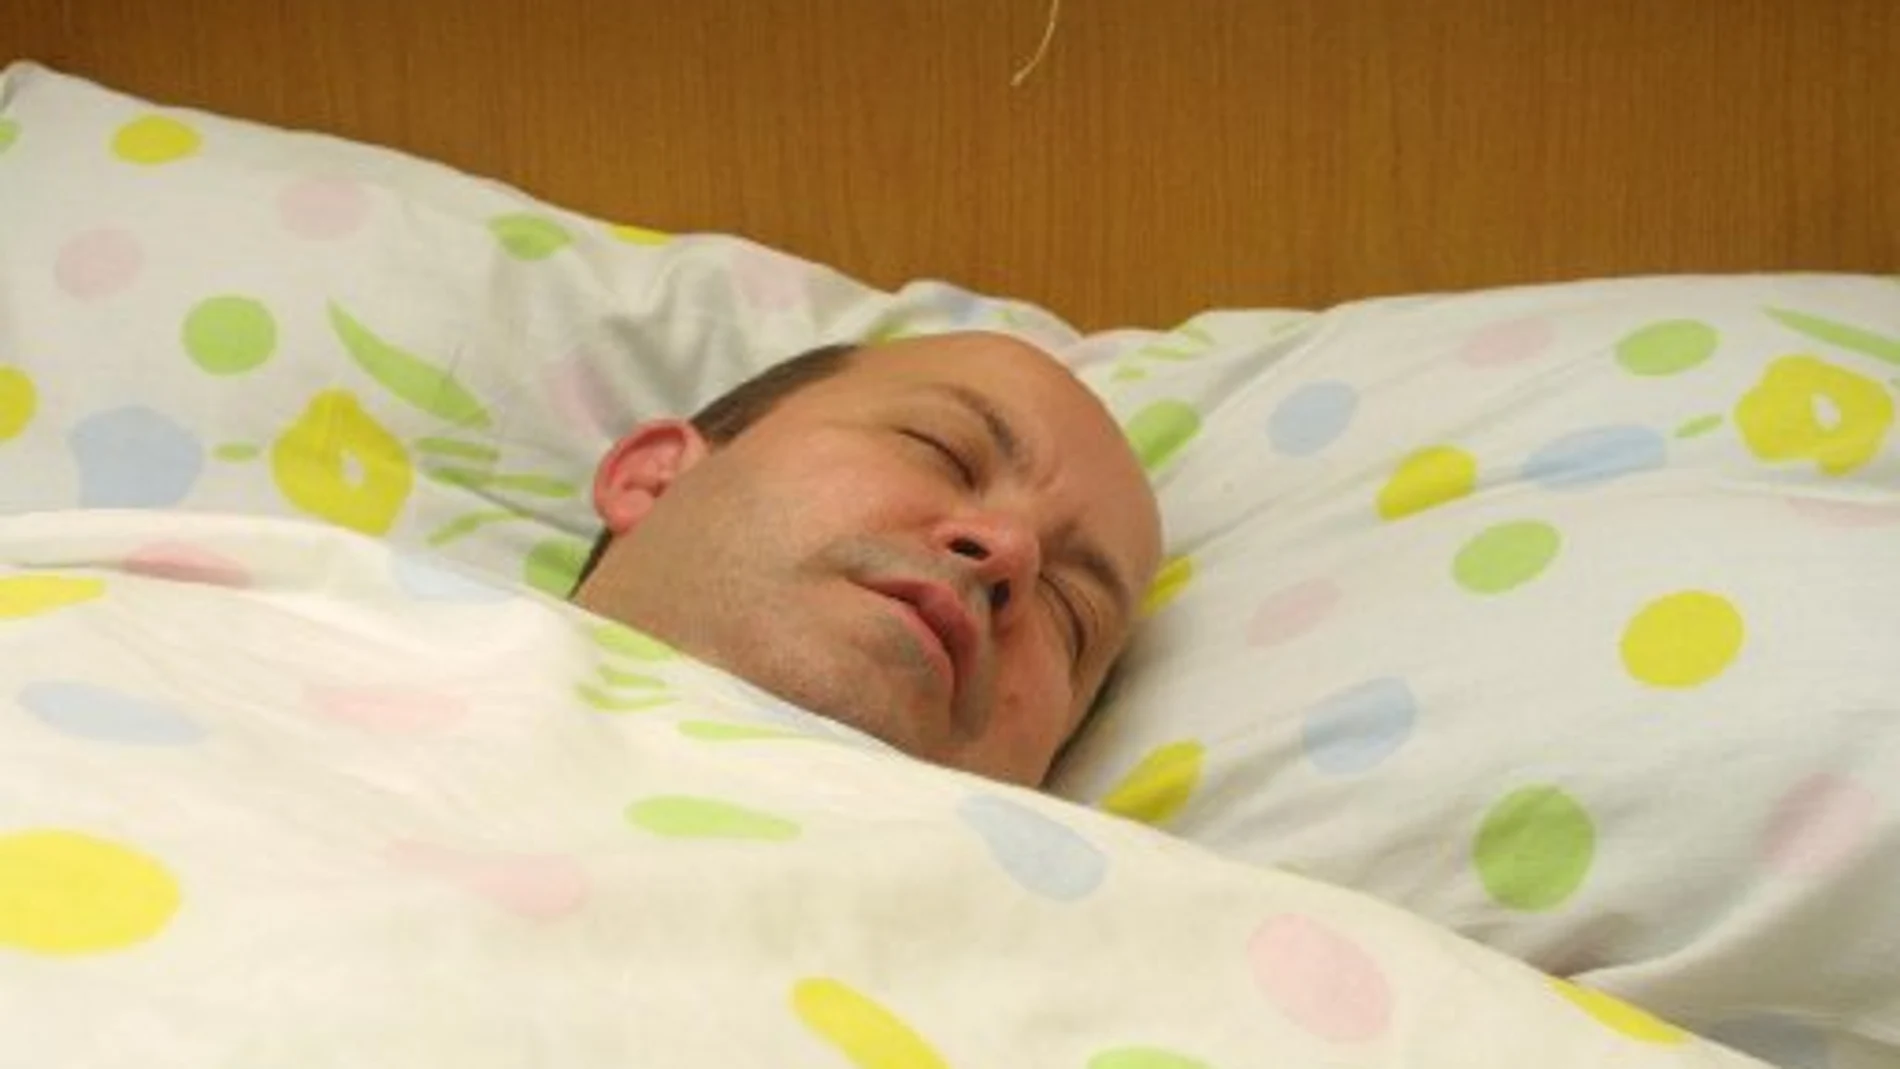 La apnea del sueño aparece como factor de riesgo principal en una investigación realizada en Finlandia